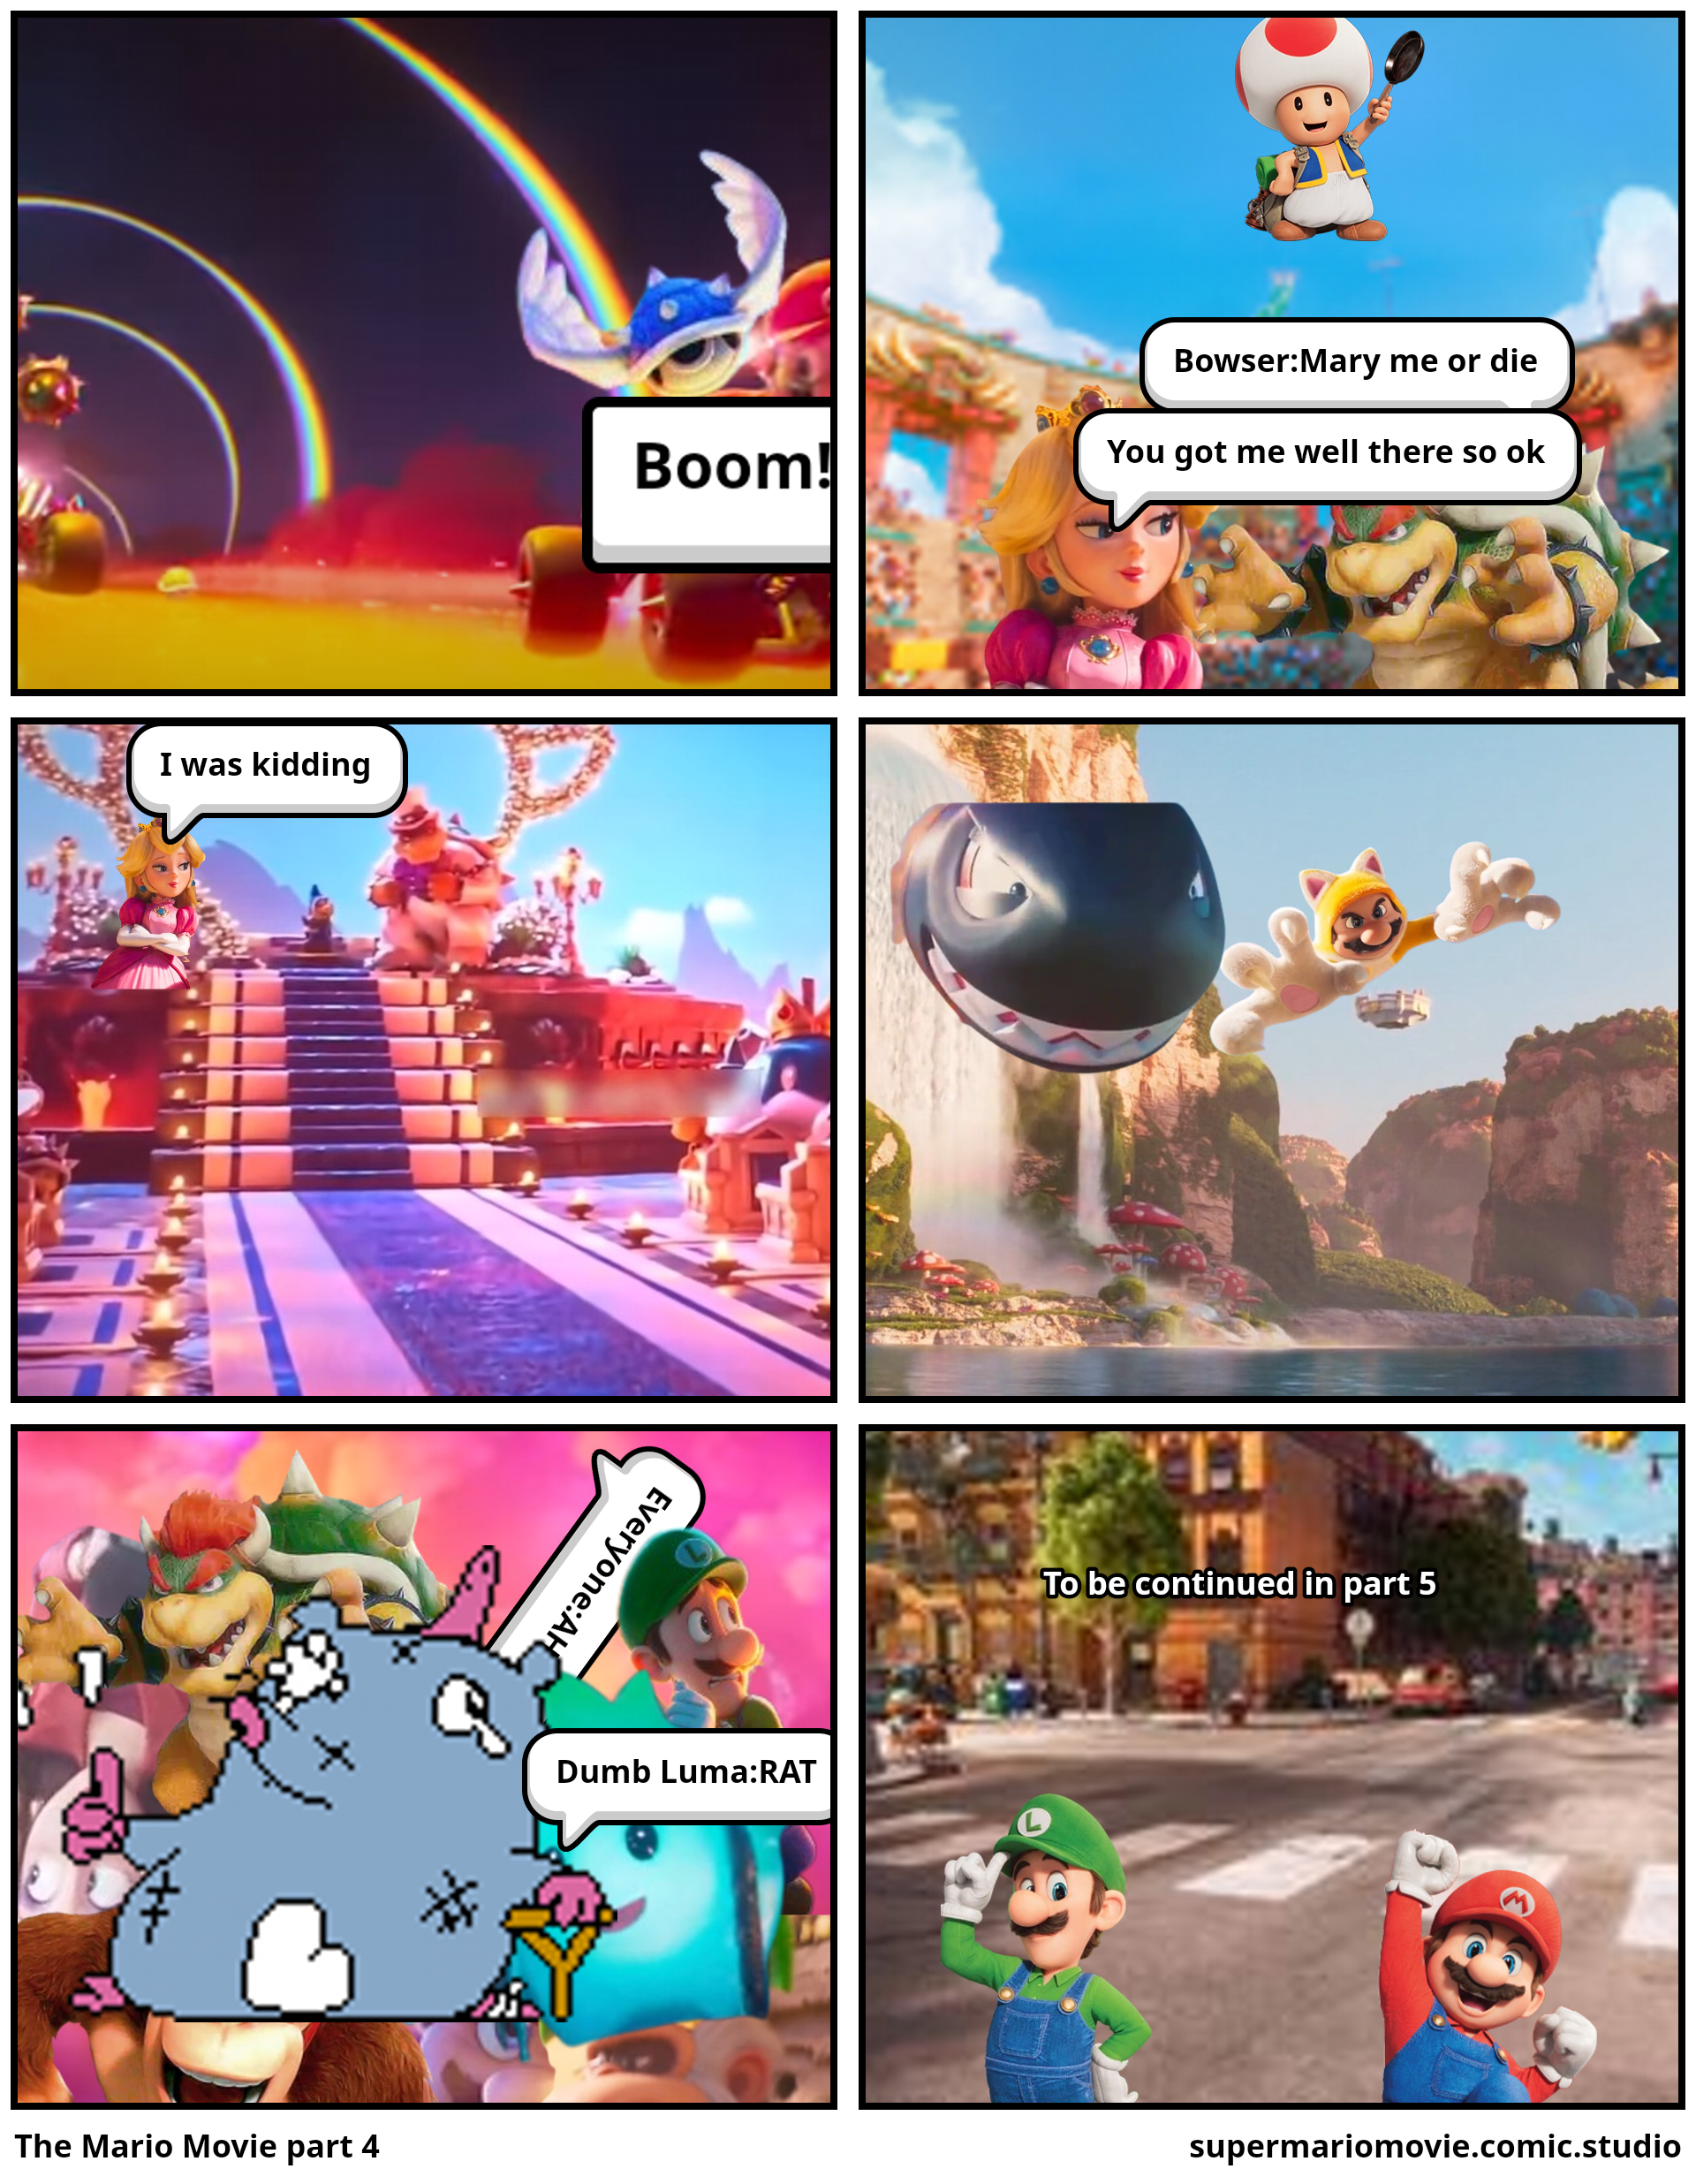 The Mario Movie part 4